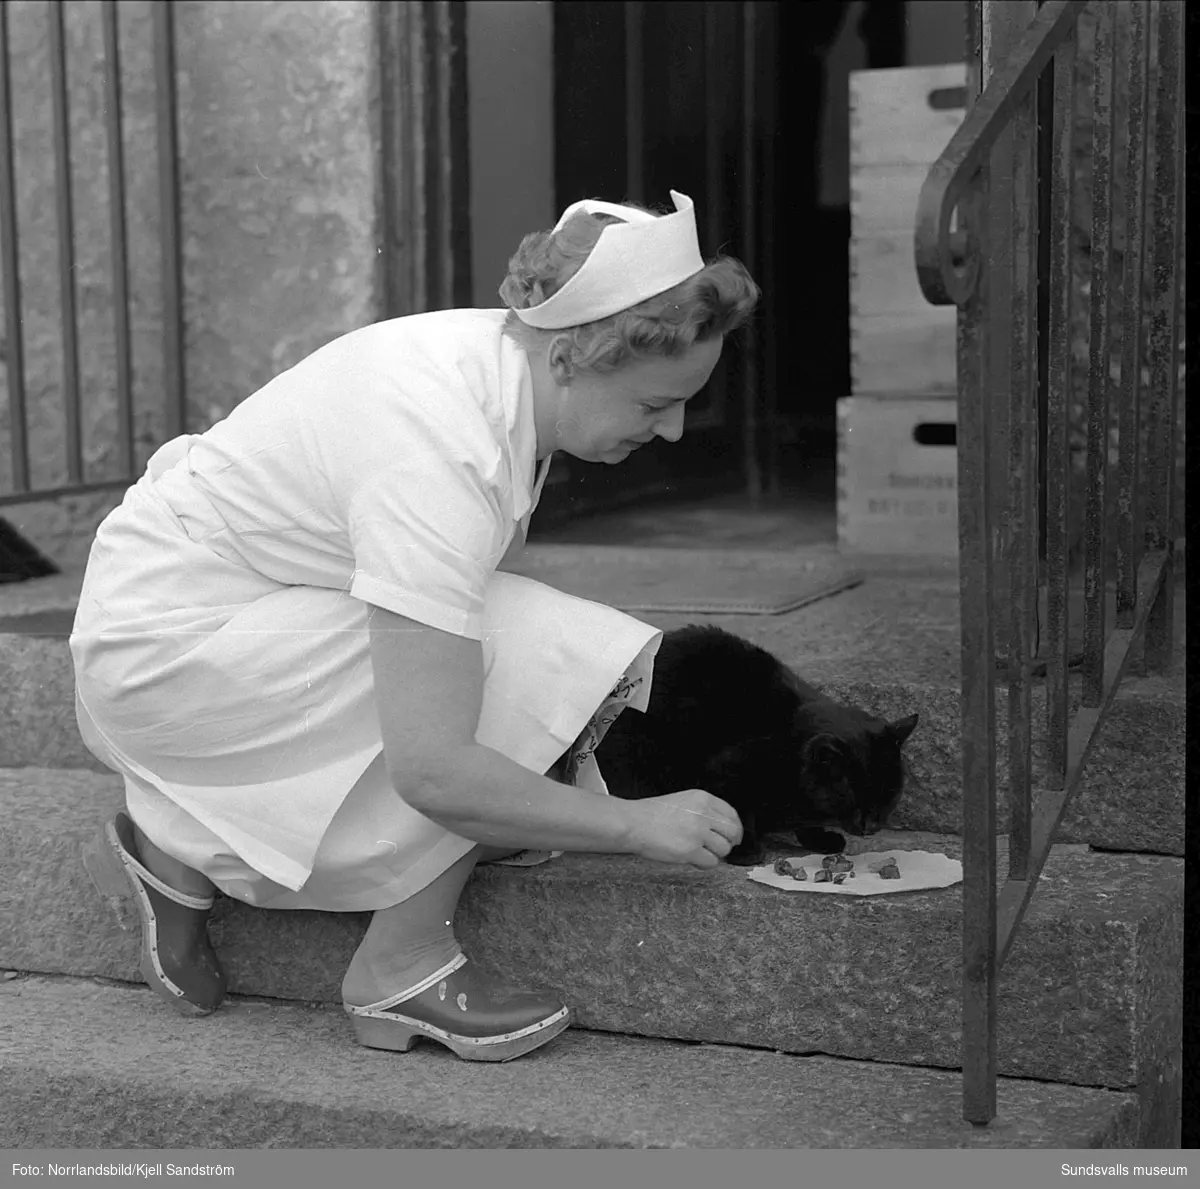 Katten Englund var en välbekant syn vid Sundsvalls centralstation under några år i slutet av 1950-talet. Den stora svarta hankatten hade på eget bevåg bosatt sig där och togs väl omhand av personalen på resgodset, utspisades i järnvägsrestaurangens kök och passade noggrant 16.55-tåget då strömmingslådorna anlände. Sitt namn fick katten av resgodspersonalen på grund av att de vid den tiden hade en kollega som hette Englund men som av någon anledning begåvas med smeknamnet "Katten".